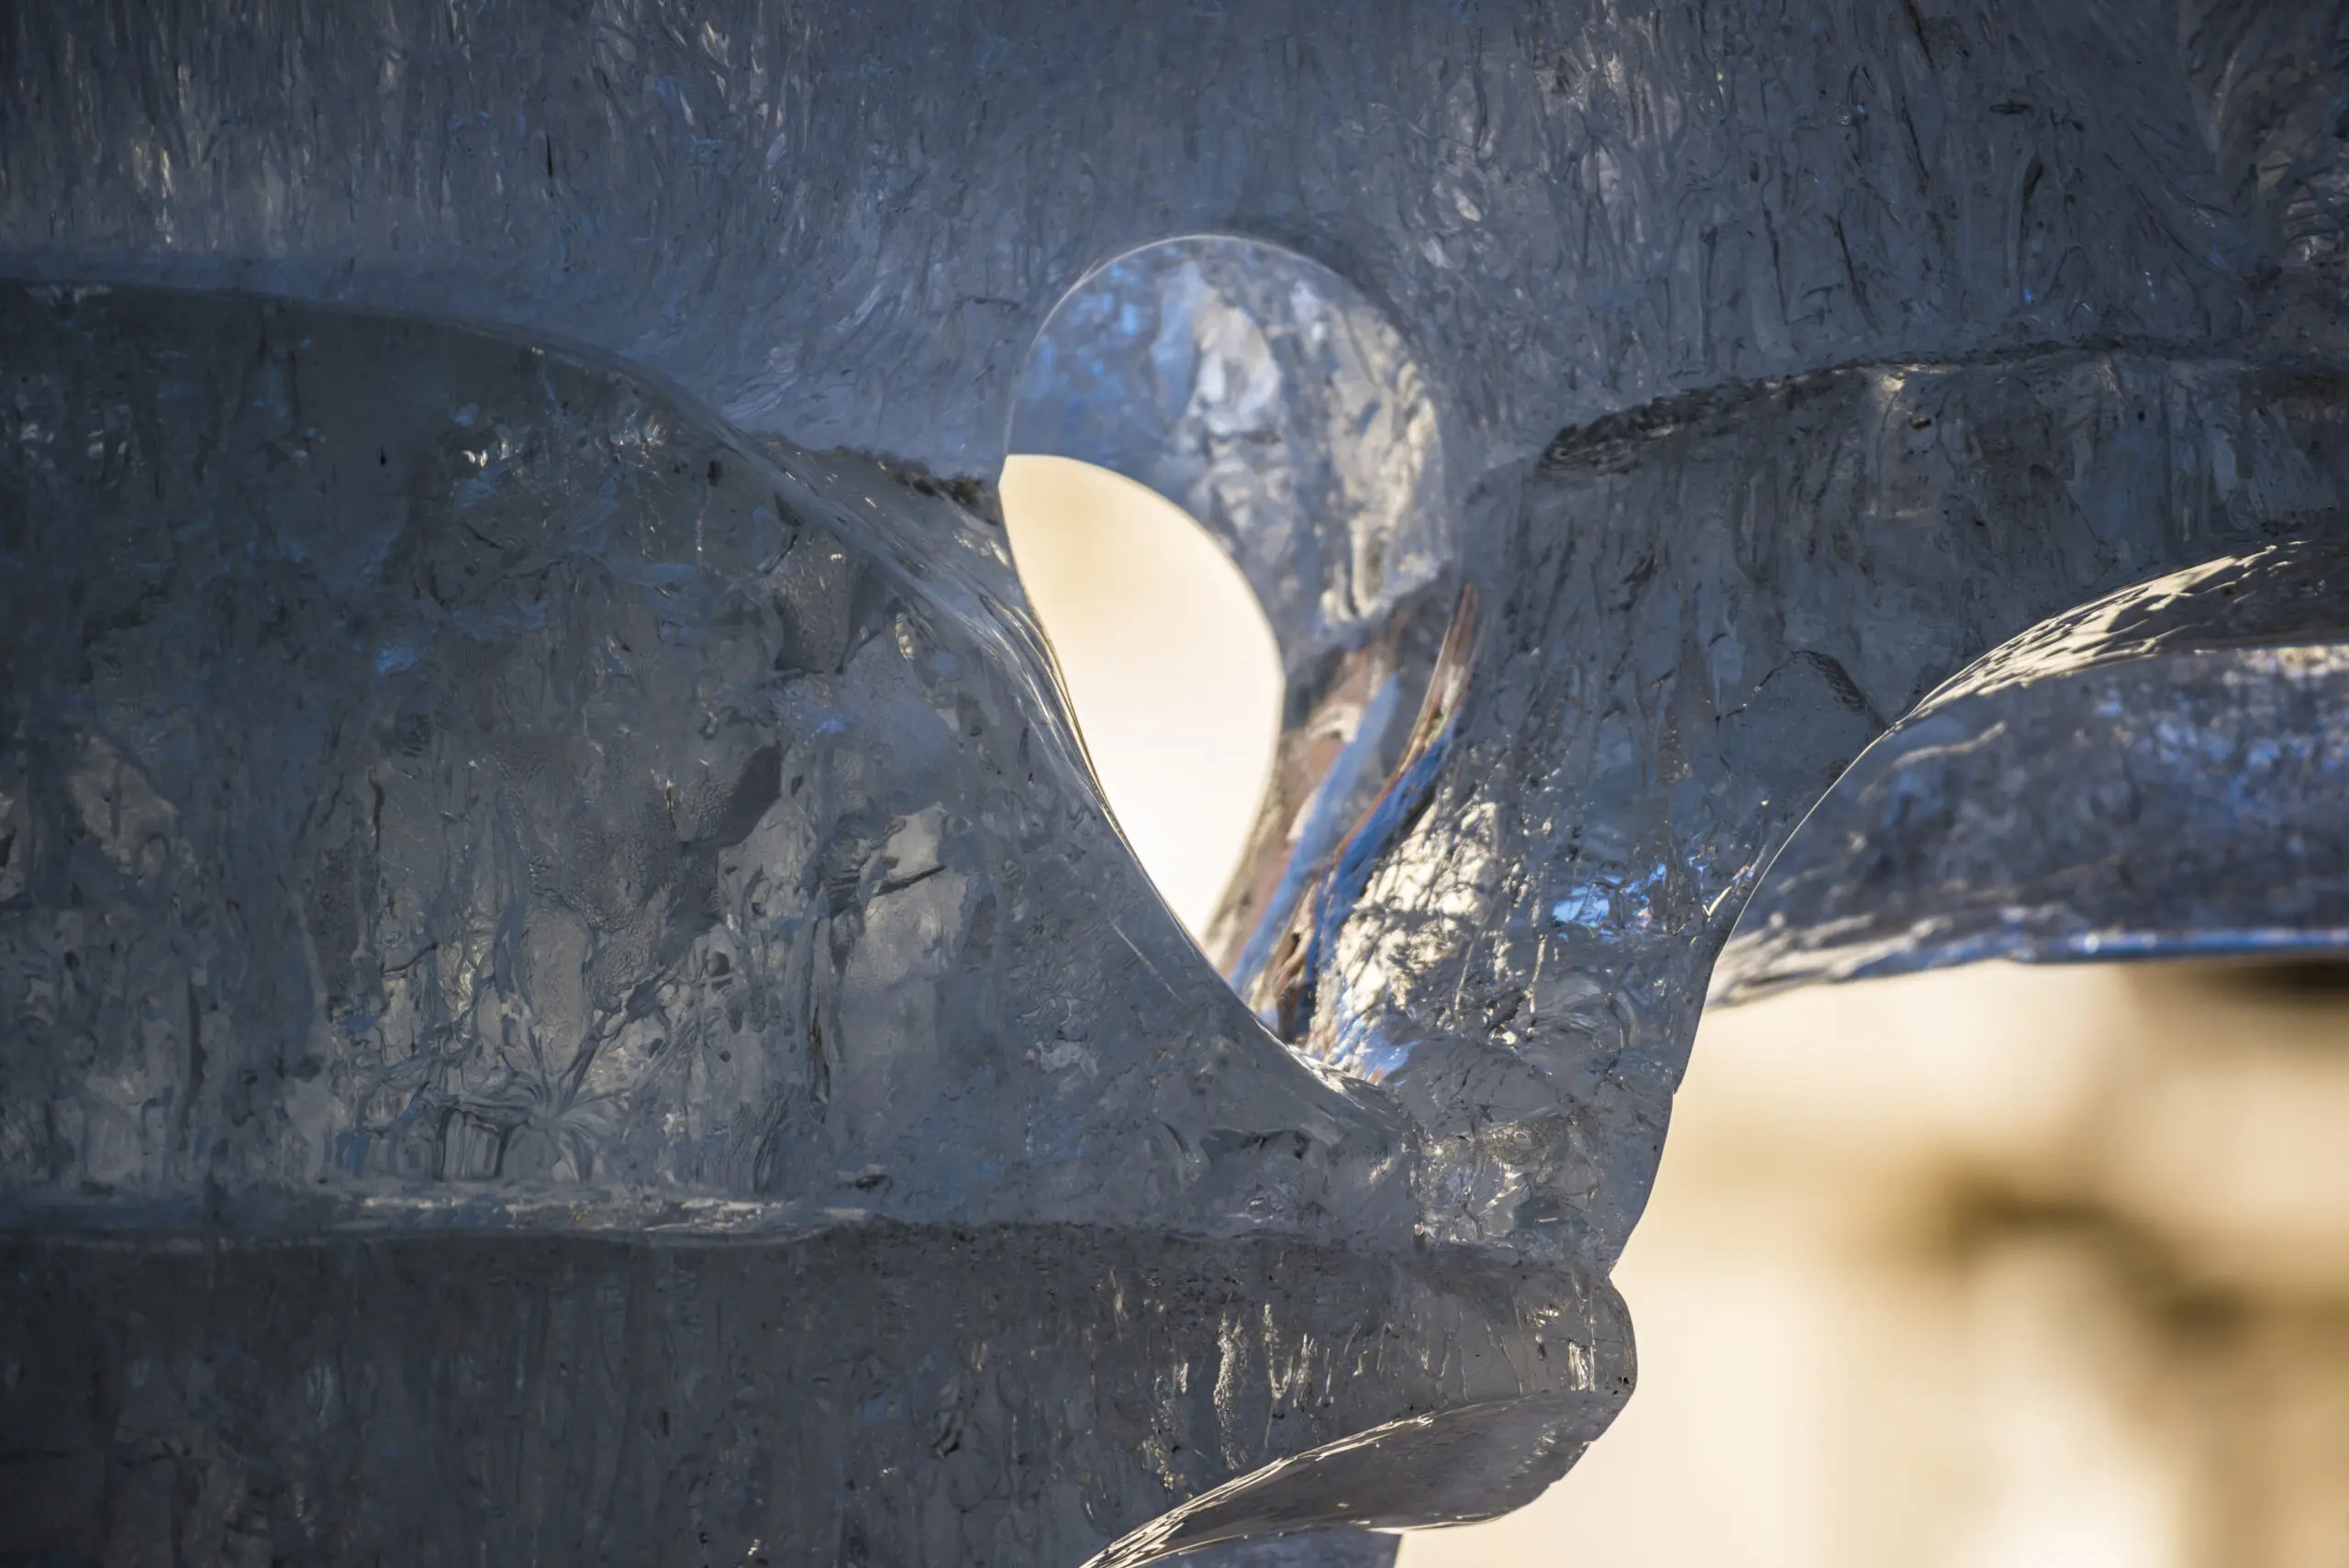 Wandbild (3719) Icy Sculpture präsentiert: Details und Strukturen,Abstrakt,Natur,Sonstige Naturdetails